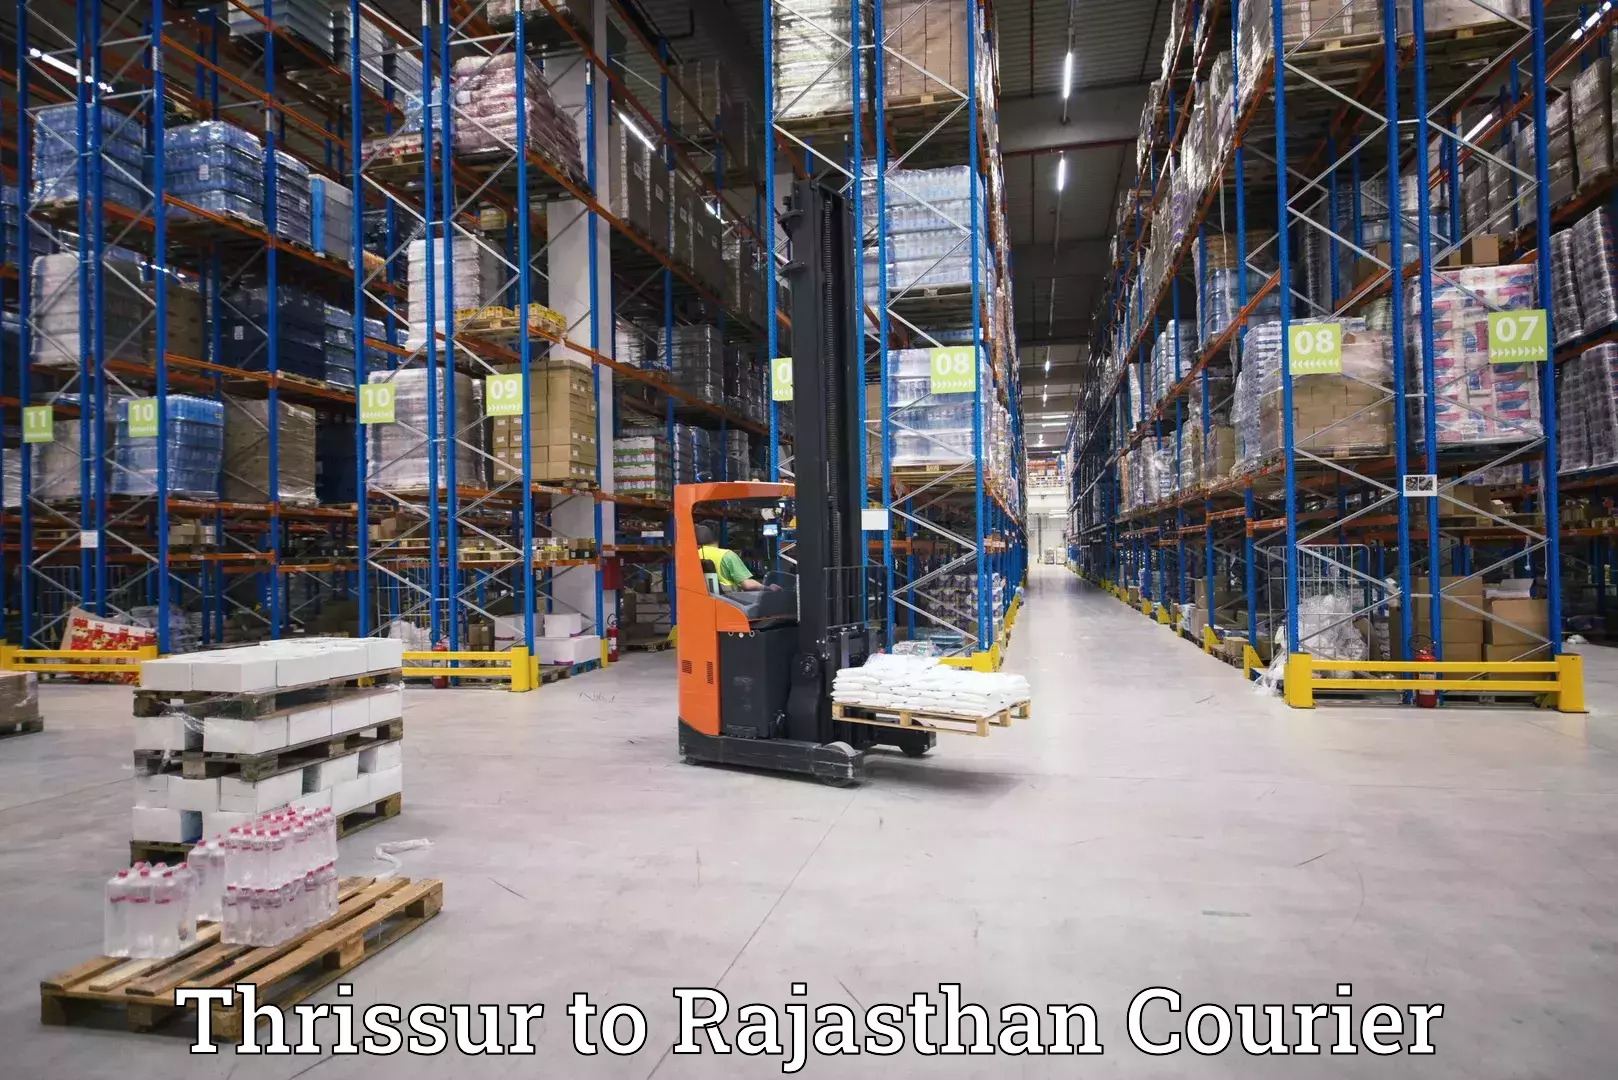 Courier service partnerships Thrissur to Pratapgarh Rajasthan